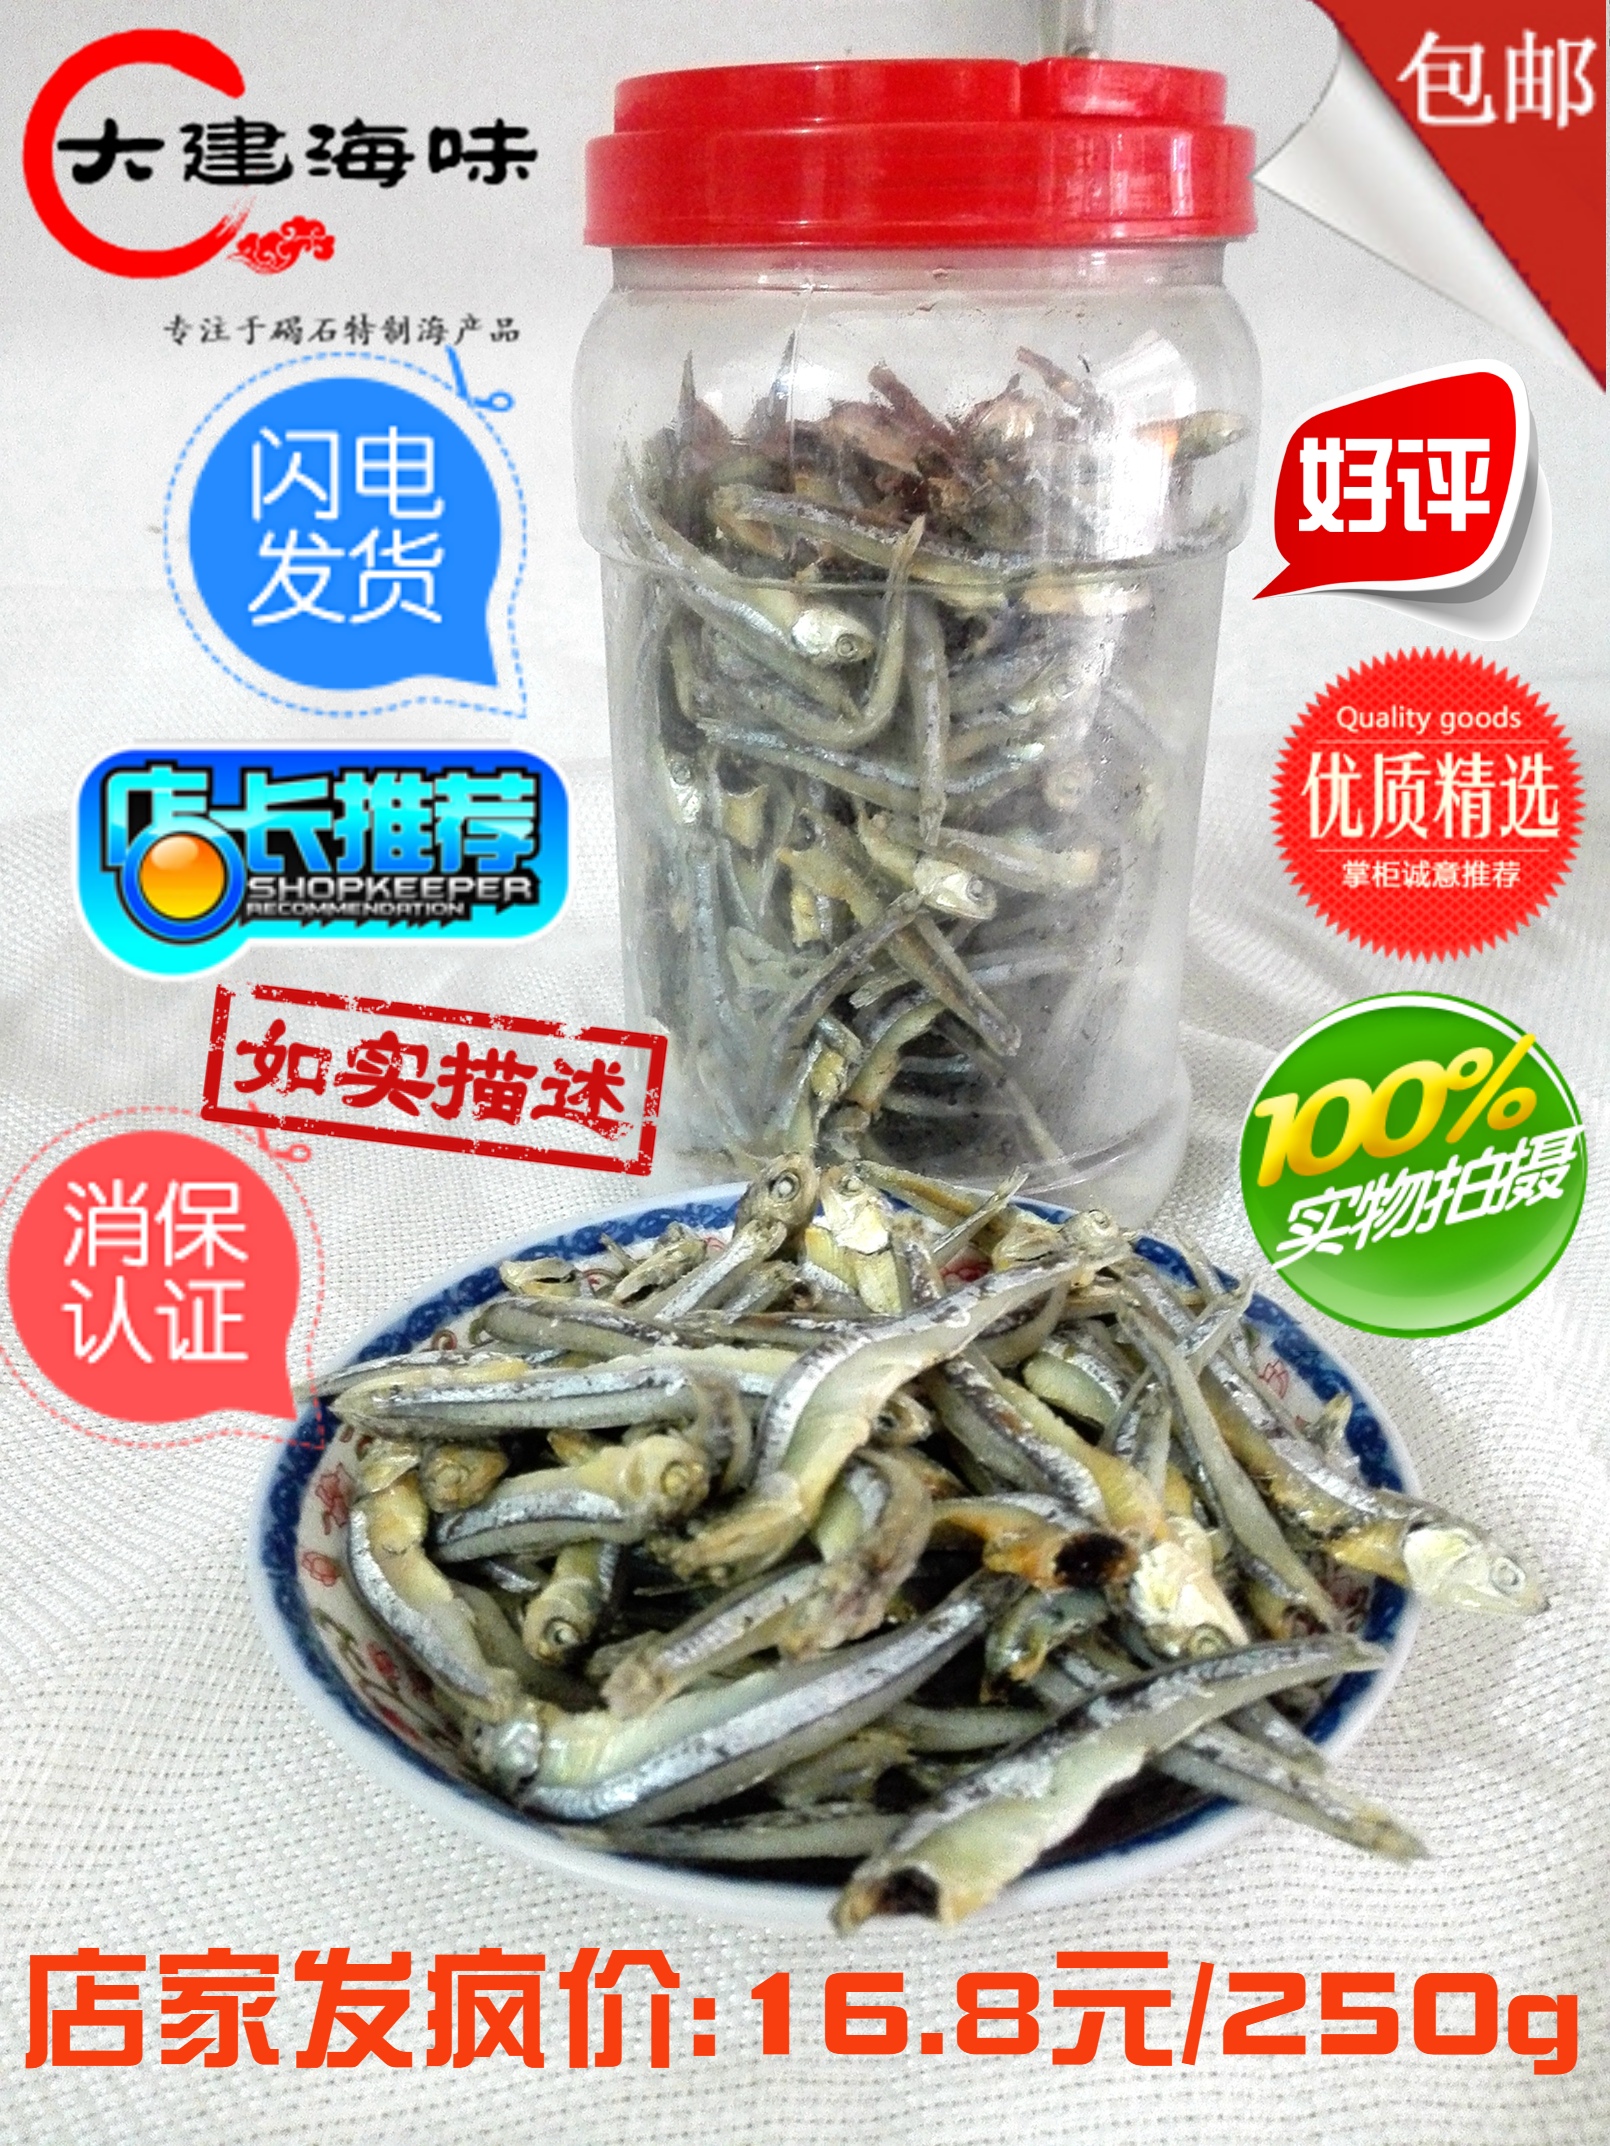 广东潮汕尾碣石特产小海鱼尧鱼仔250g银鱼干海鲜干货水产海味咸鱼